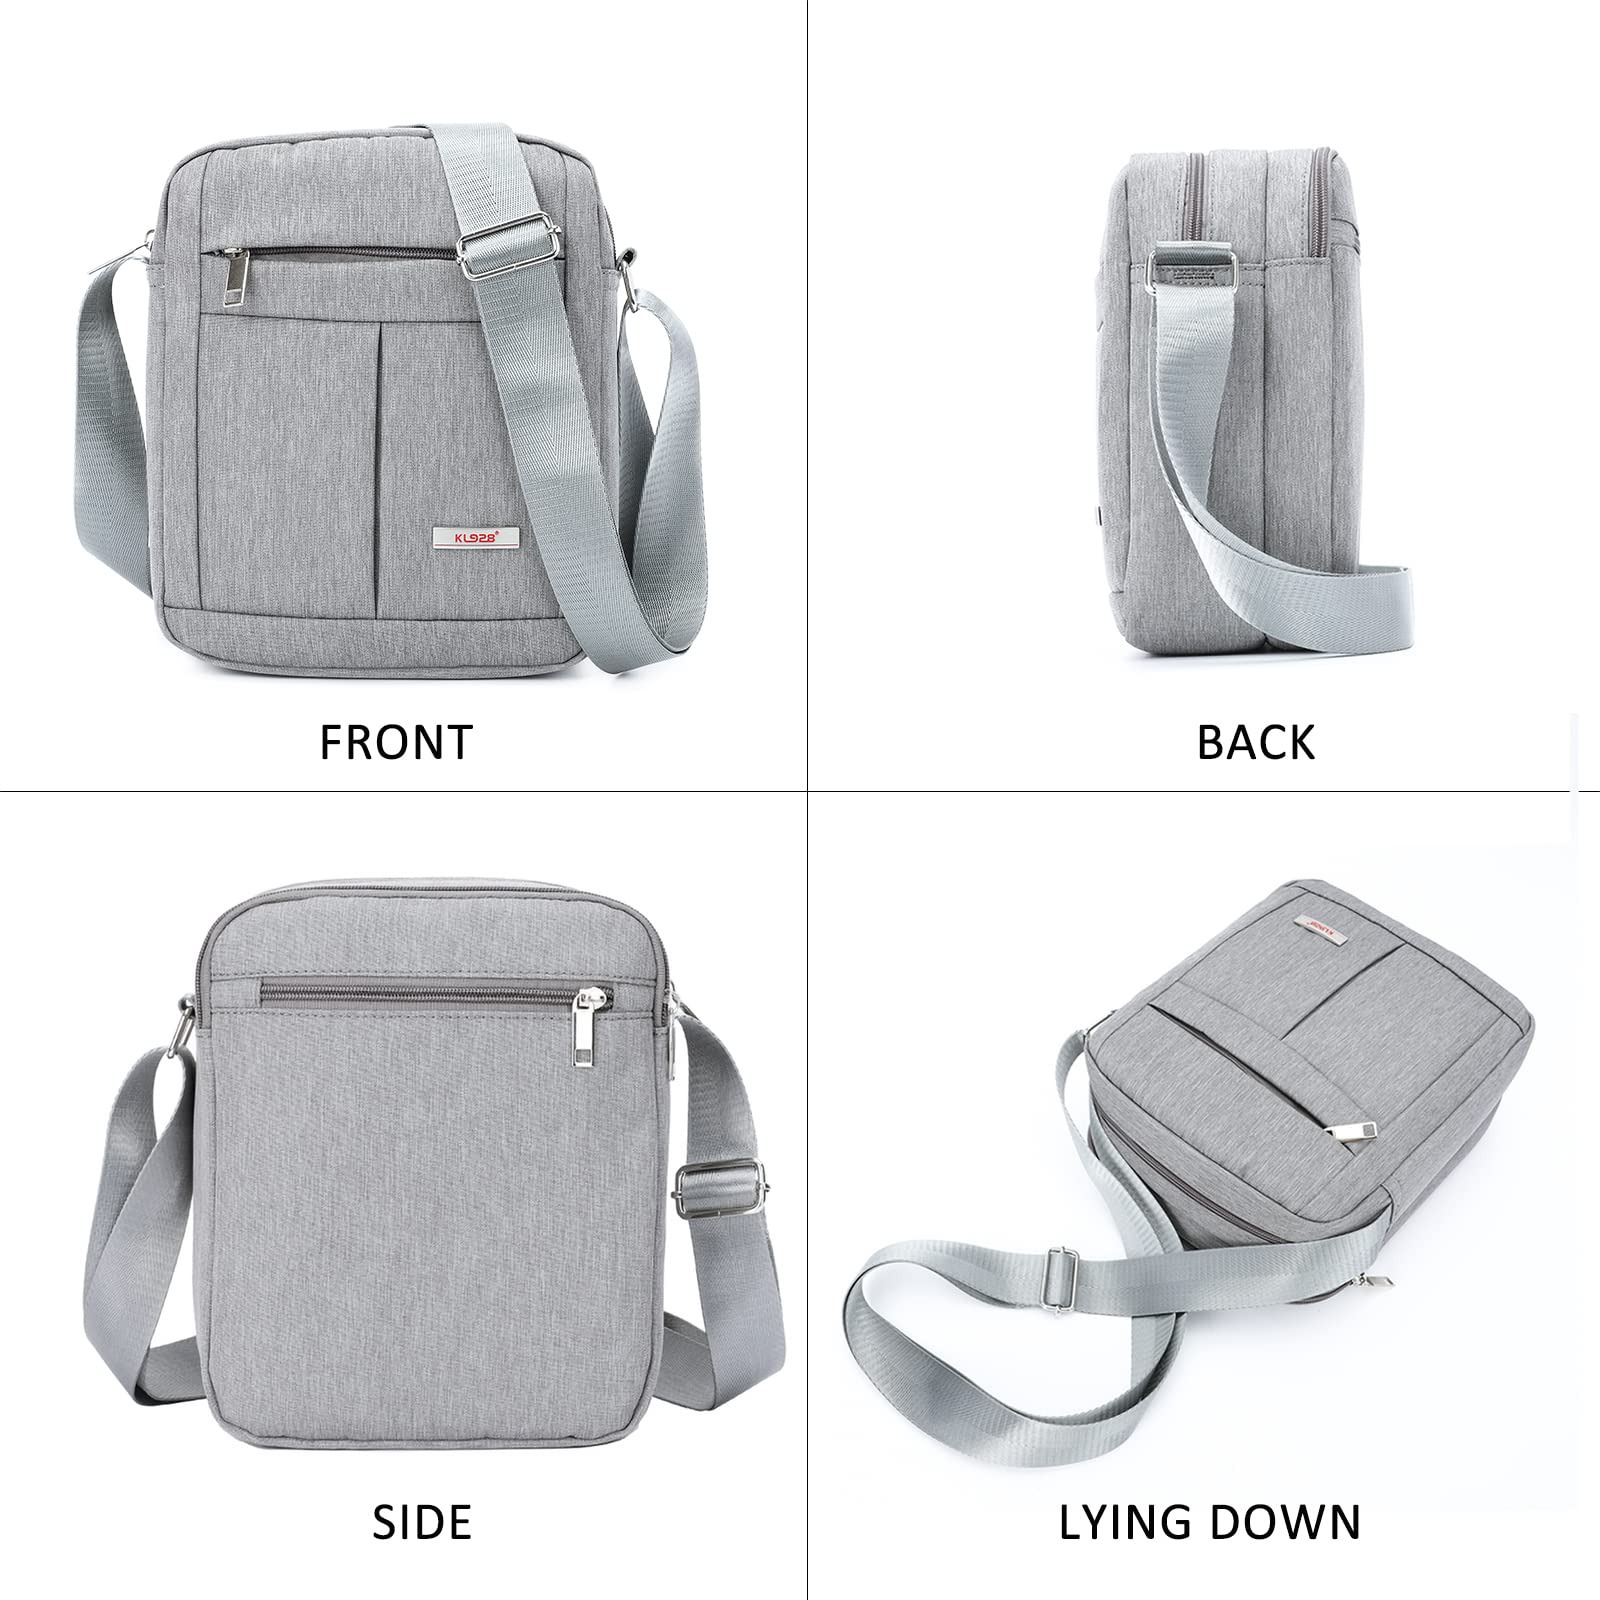  KL928 Men's Messenger Bag - Crossbody Shoulder Bags Travel Bag  Man Purse Casual Sling Pack for Work Business (1401-2-Black)